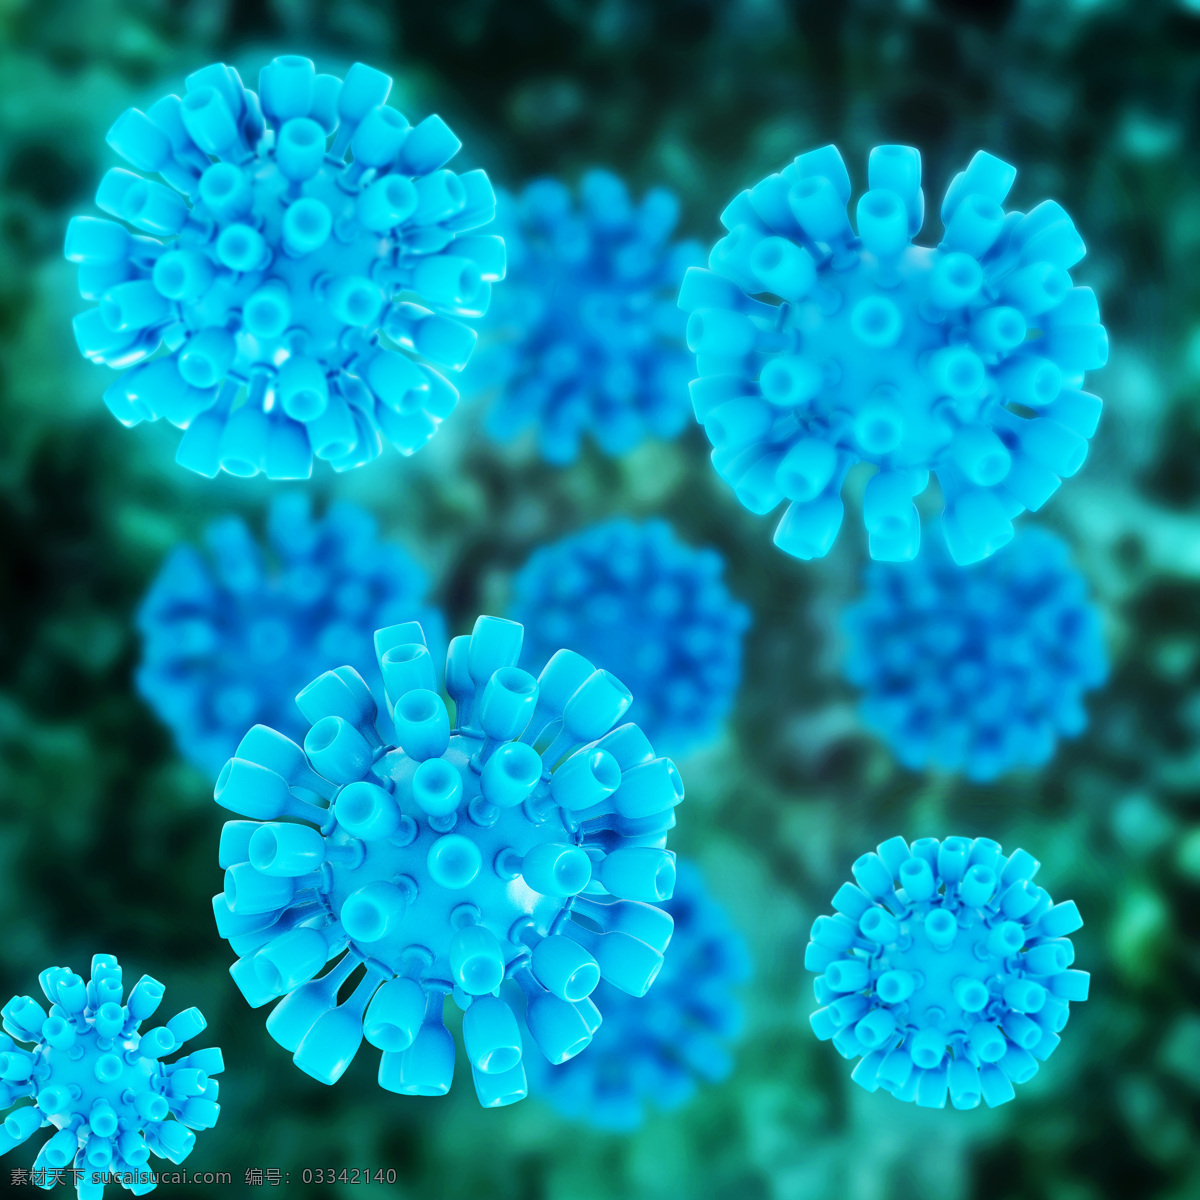 蓝色 人体 细胞 细菌 身体细胞 生物 细胞图片 现代科技